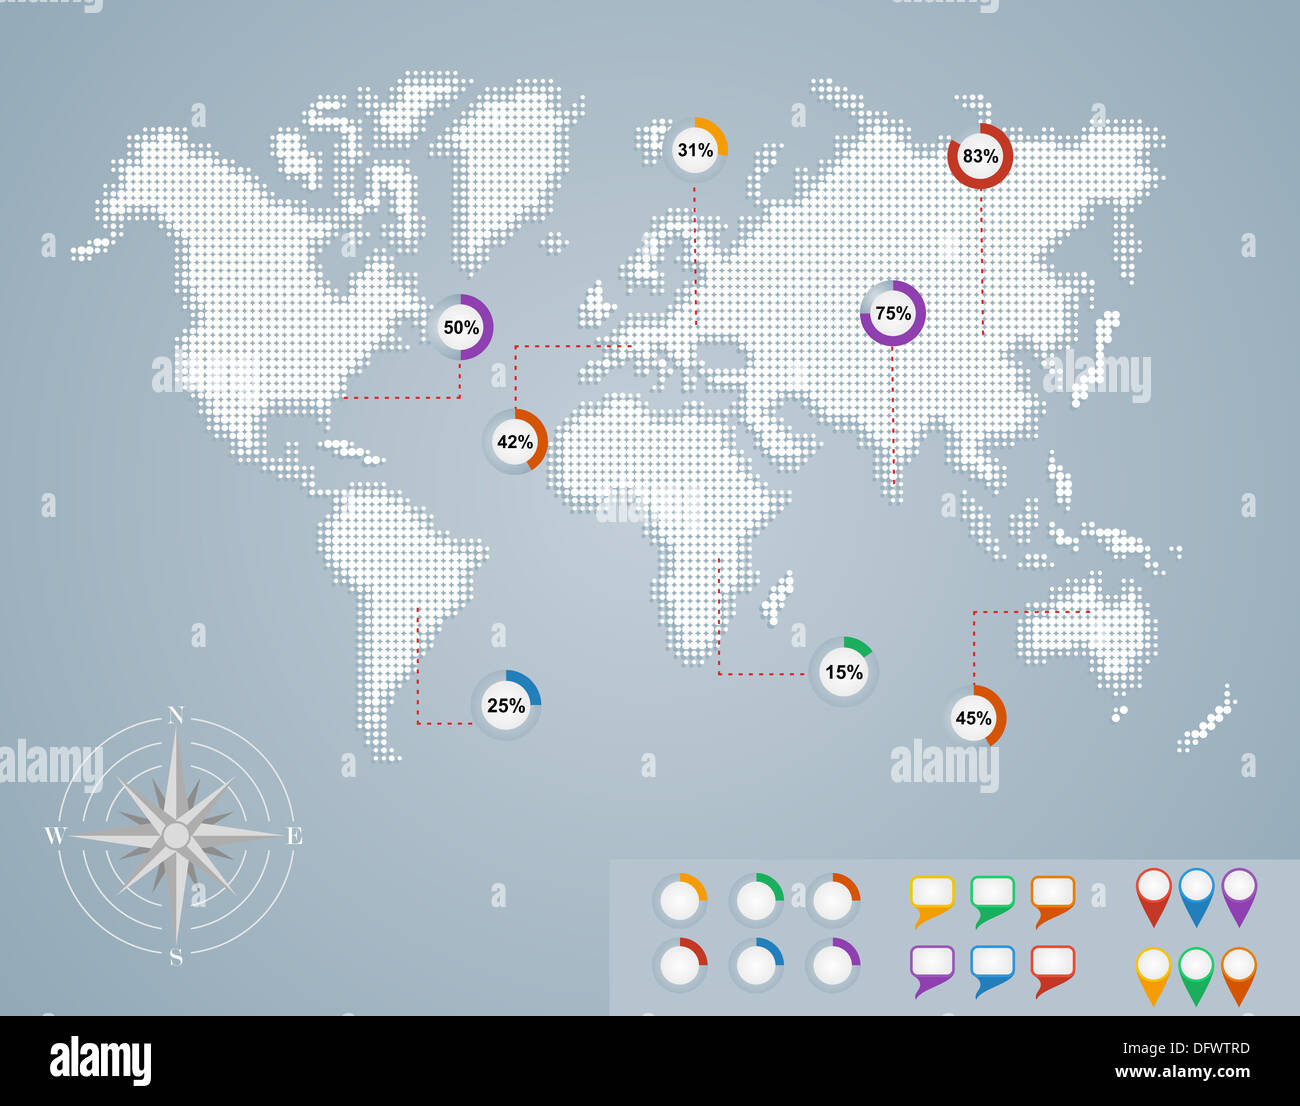 Weltkarte, Geo Position Zeiger Symbole Infografiken Vorlage. EPS10 Vektor-Datei organisiert in Schichten für die einfache Bearbeitung. Stockfoto